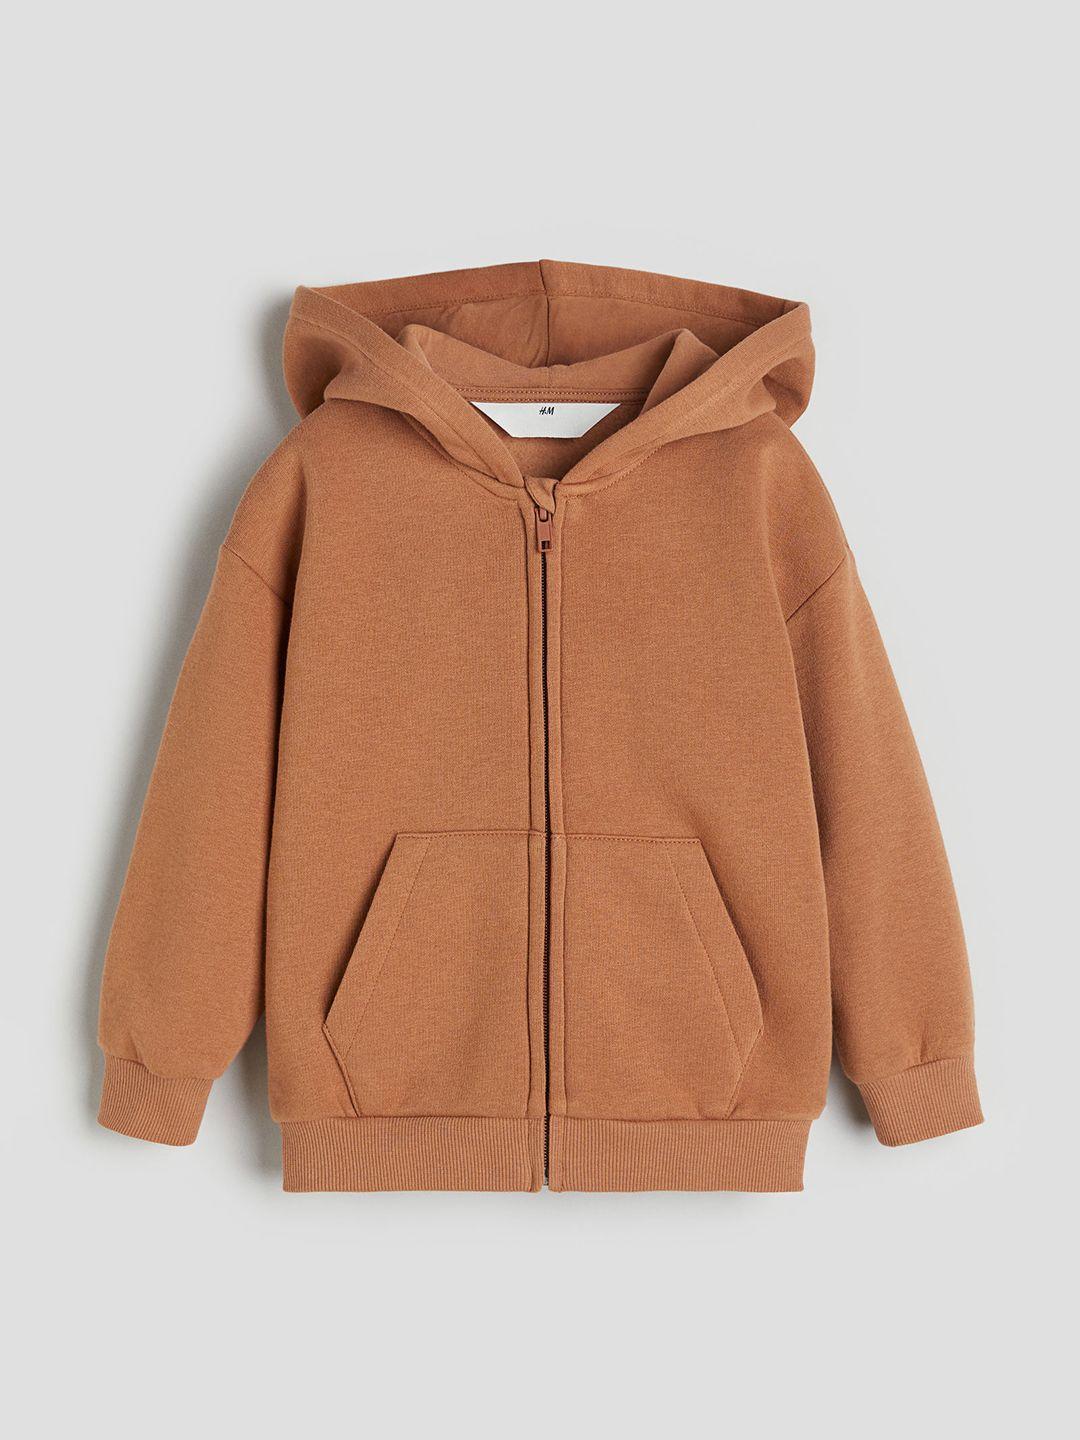 h&m boys zip-through hoodie sweatshirt